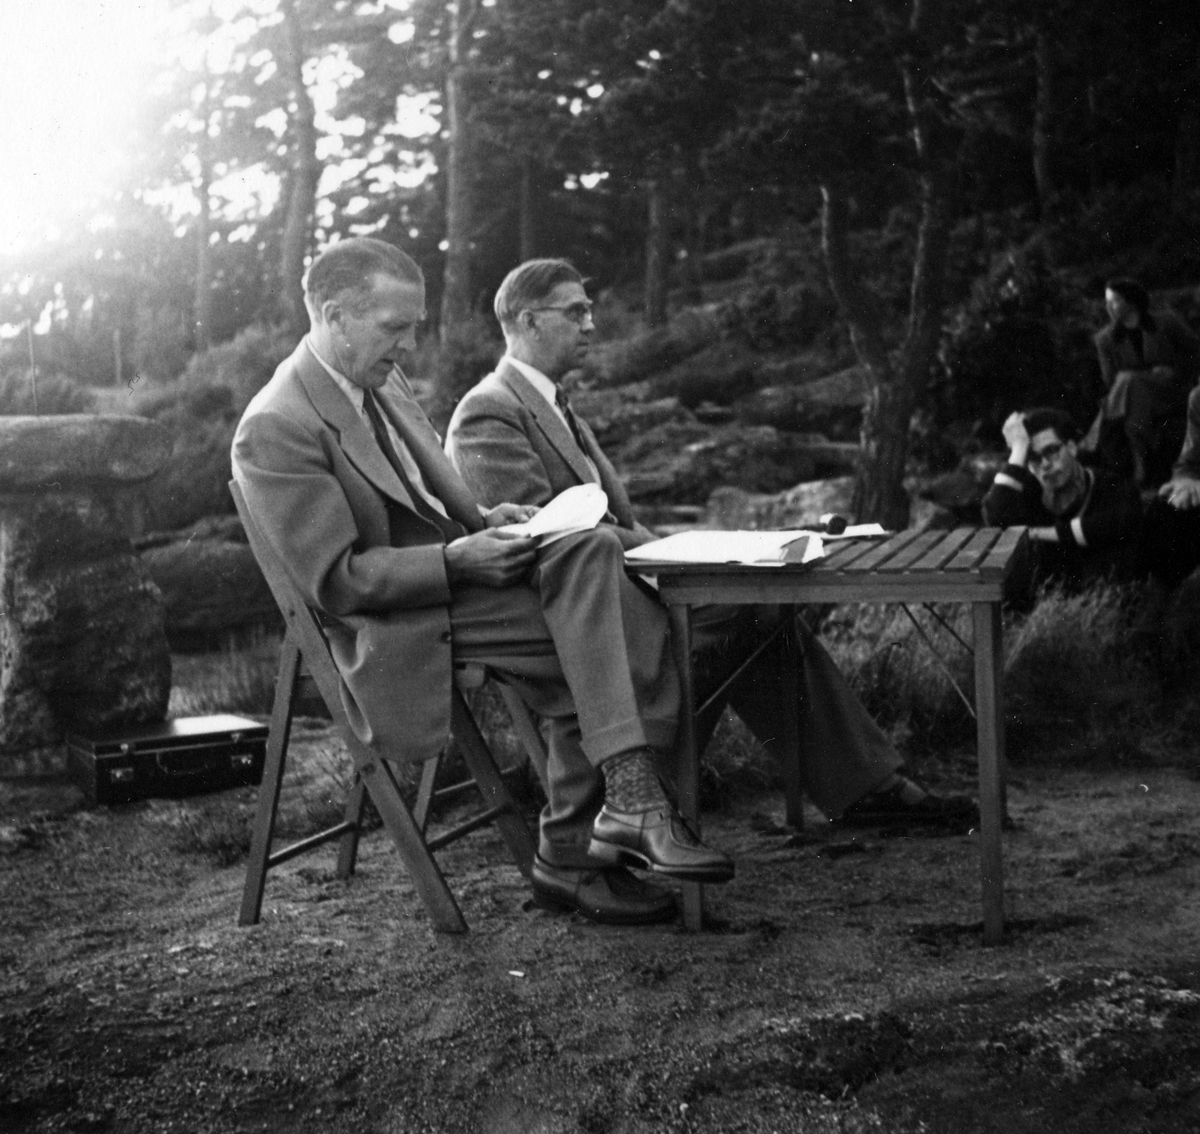 Två män sitter vid ett bord utomhus på ett årsmöte. I bakgrunden syns mötesdeltagare. Anteckning på kortets baksida "Årsmöte 1954".